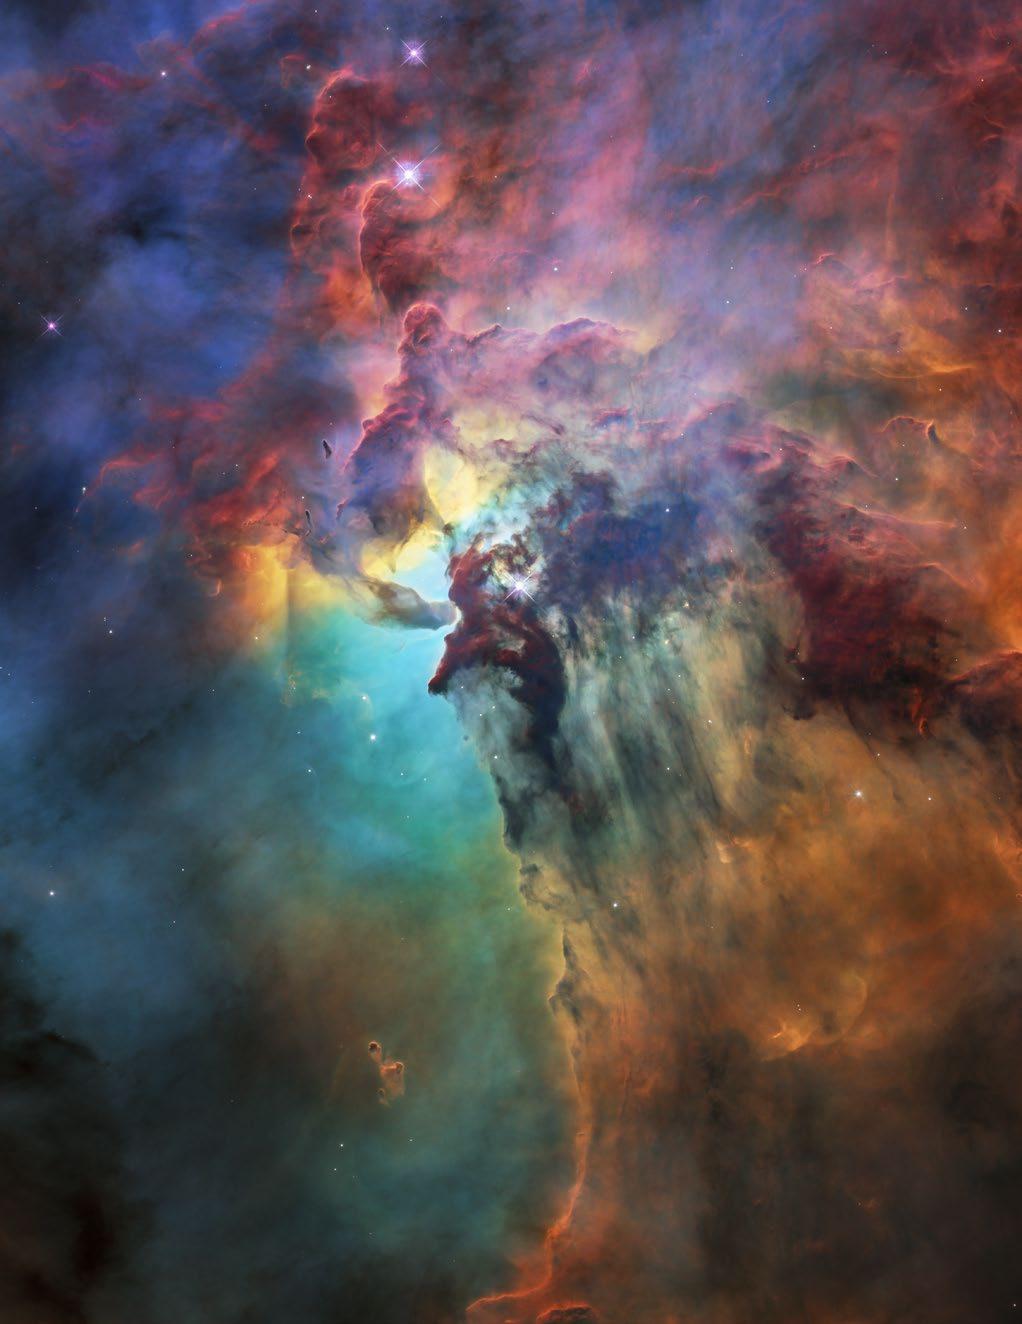 Hubble: the Lagoon